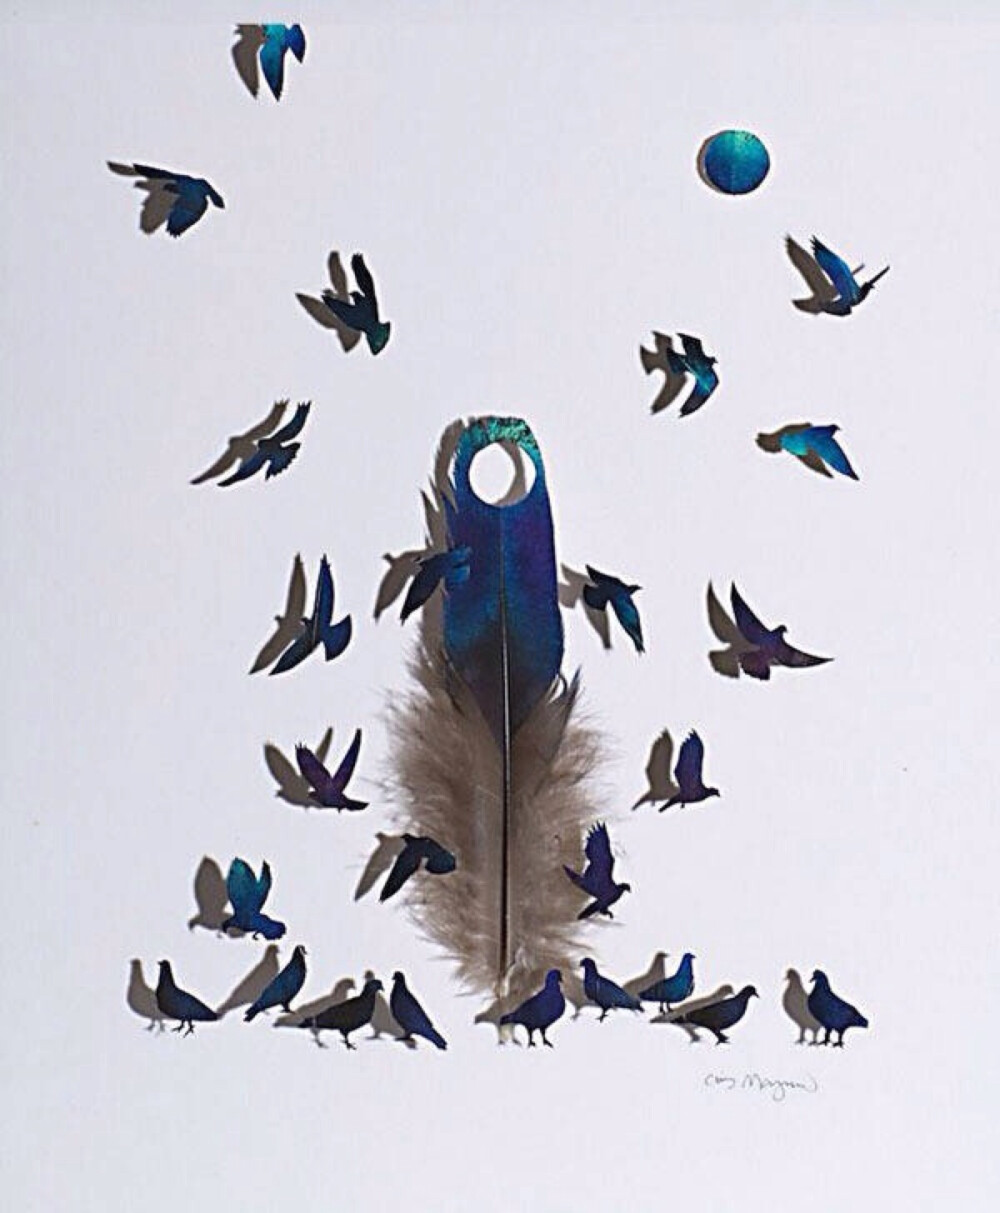 来自华盛顿的艺术家Chris Maynard钟爱羽毛，他采集各种各样的鸟类羽毛作为画布，接着使用手术钳、手术刀和放大镜进行加工，让掉落的羽毛继续飞翔。